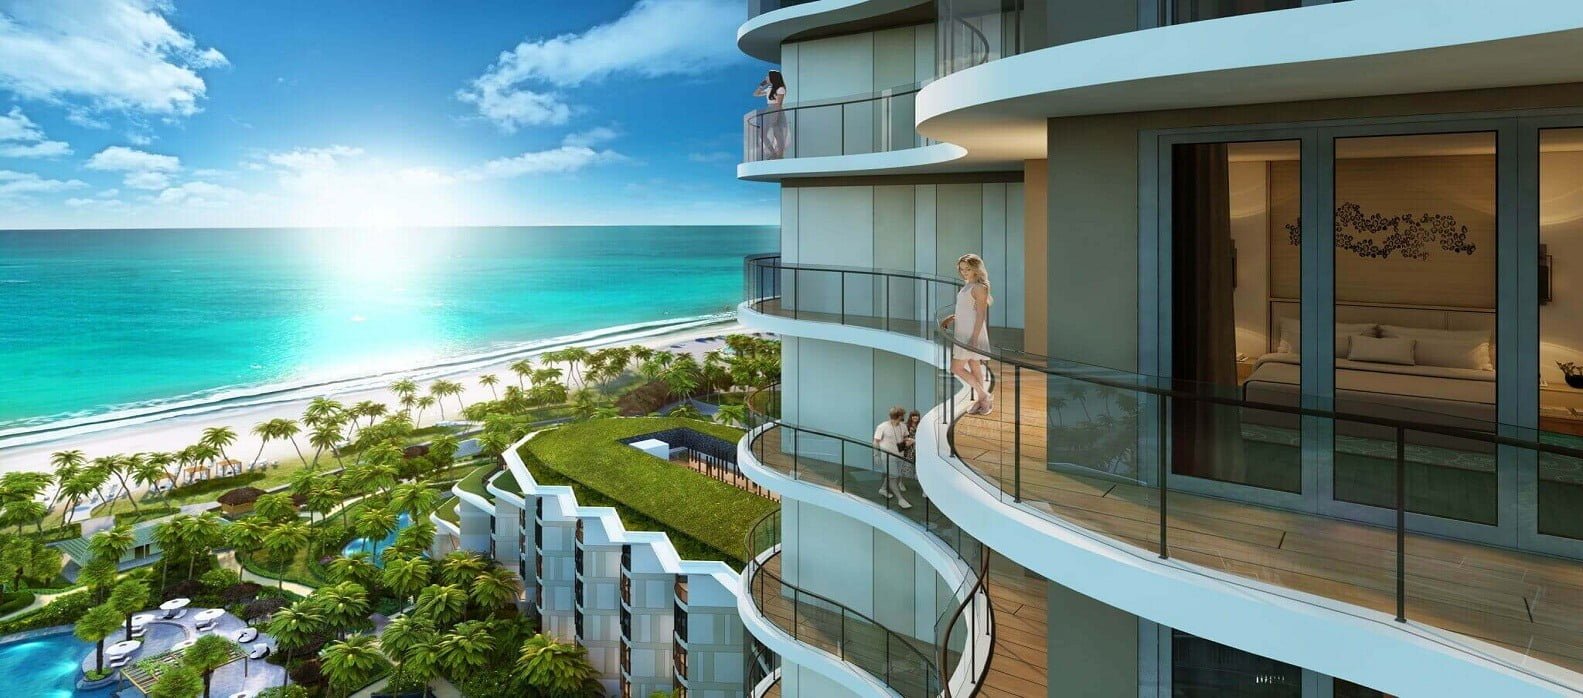 Dự án Casino thuộc quần thể du lịch – nghỉ dưỡng Corona Resort & Casino Phú Quốc tại Bãi Dài, Phú Quốc, hứa hẹn là "ẩn số thú vị" thu hút sự quan tâm của khách quốc tế